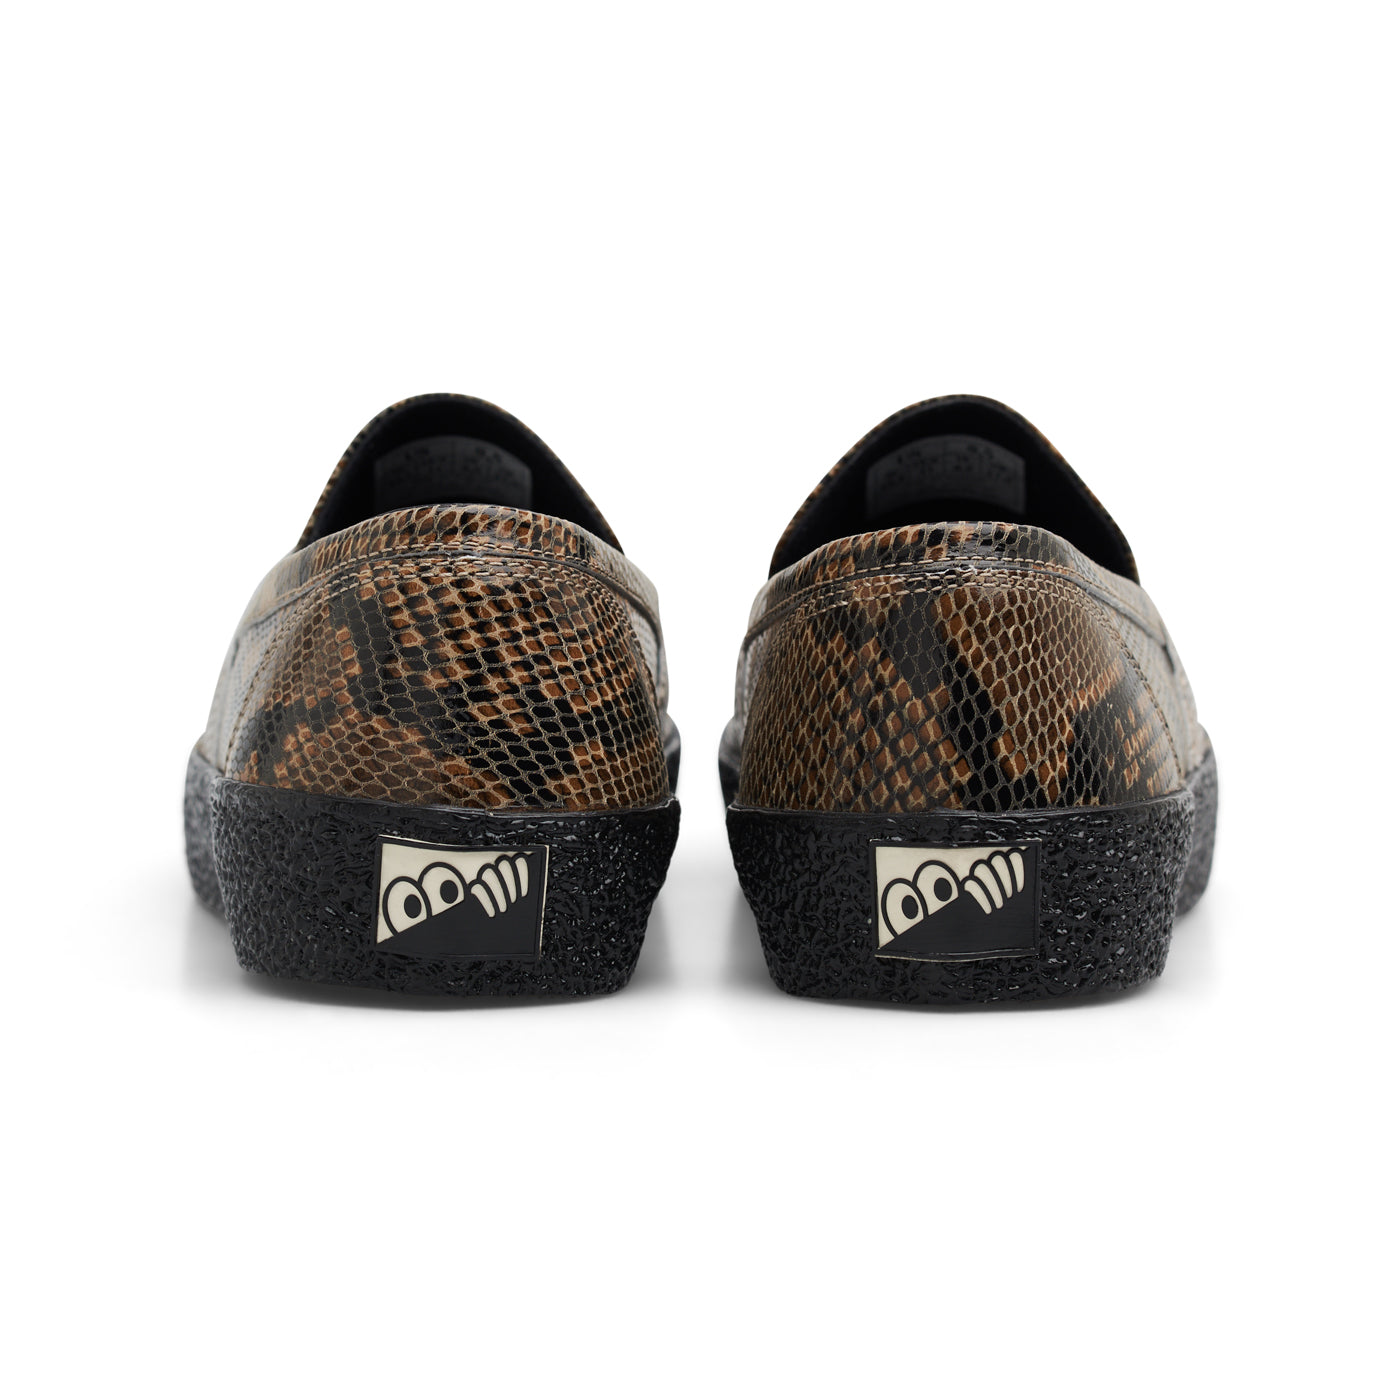 VM005-Loafer Leather (Brown Python/Black)